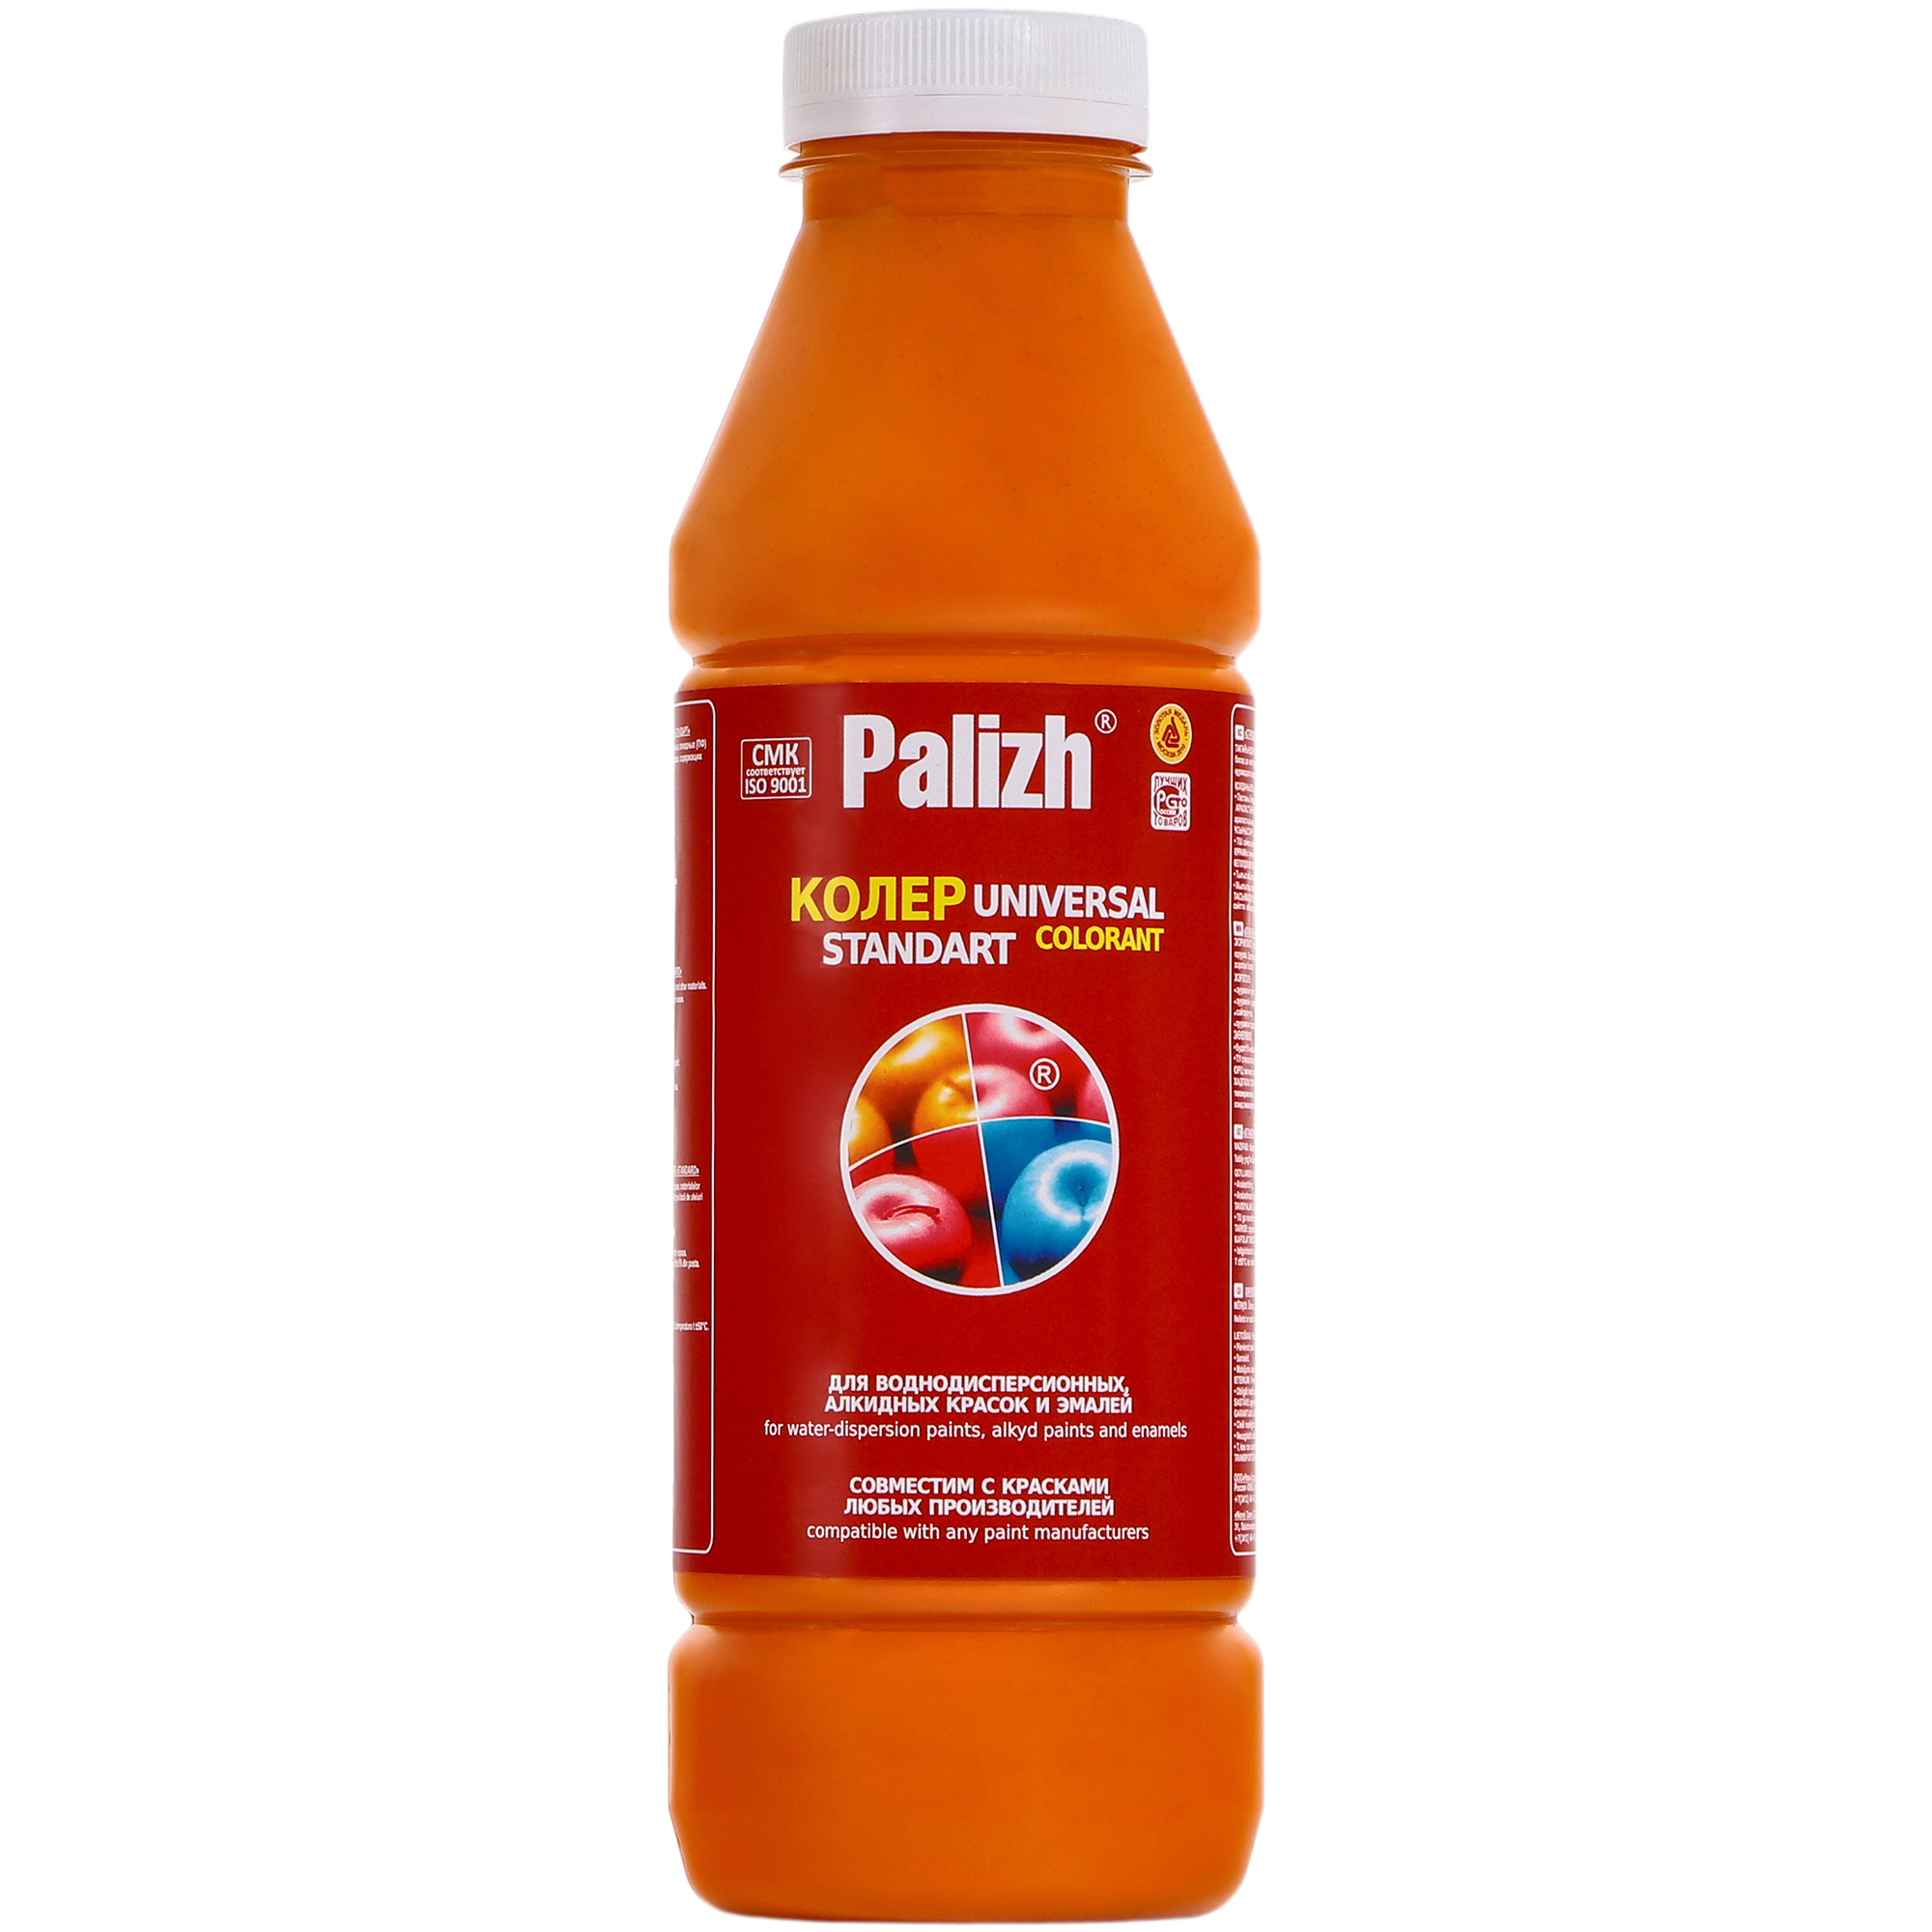 Паста универсальная колеровочная Palizh апельсин - 900 мл паста колеровочная универсальная фасадная palizh красный мак 100мл